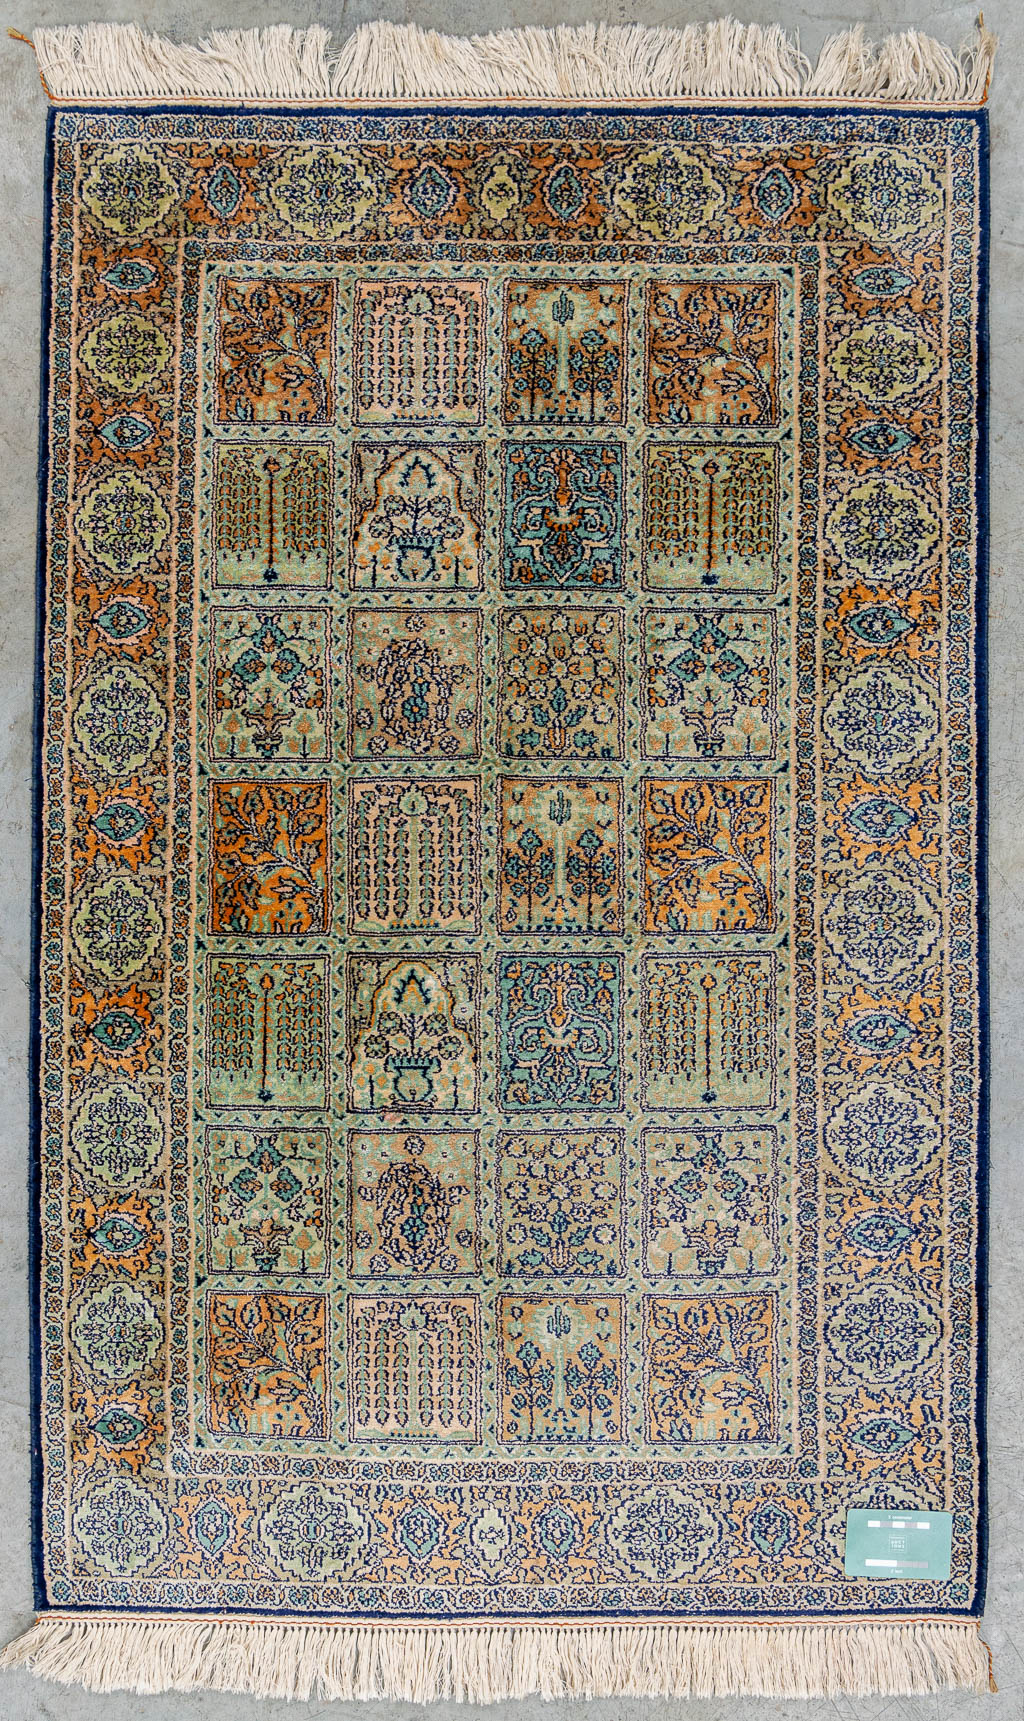 An Oriental hand-made carpet, Kashmir, India. (125 x 78 cm)